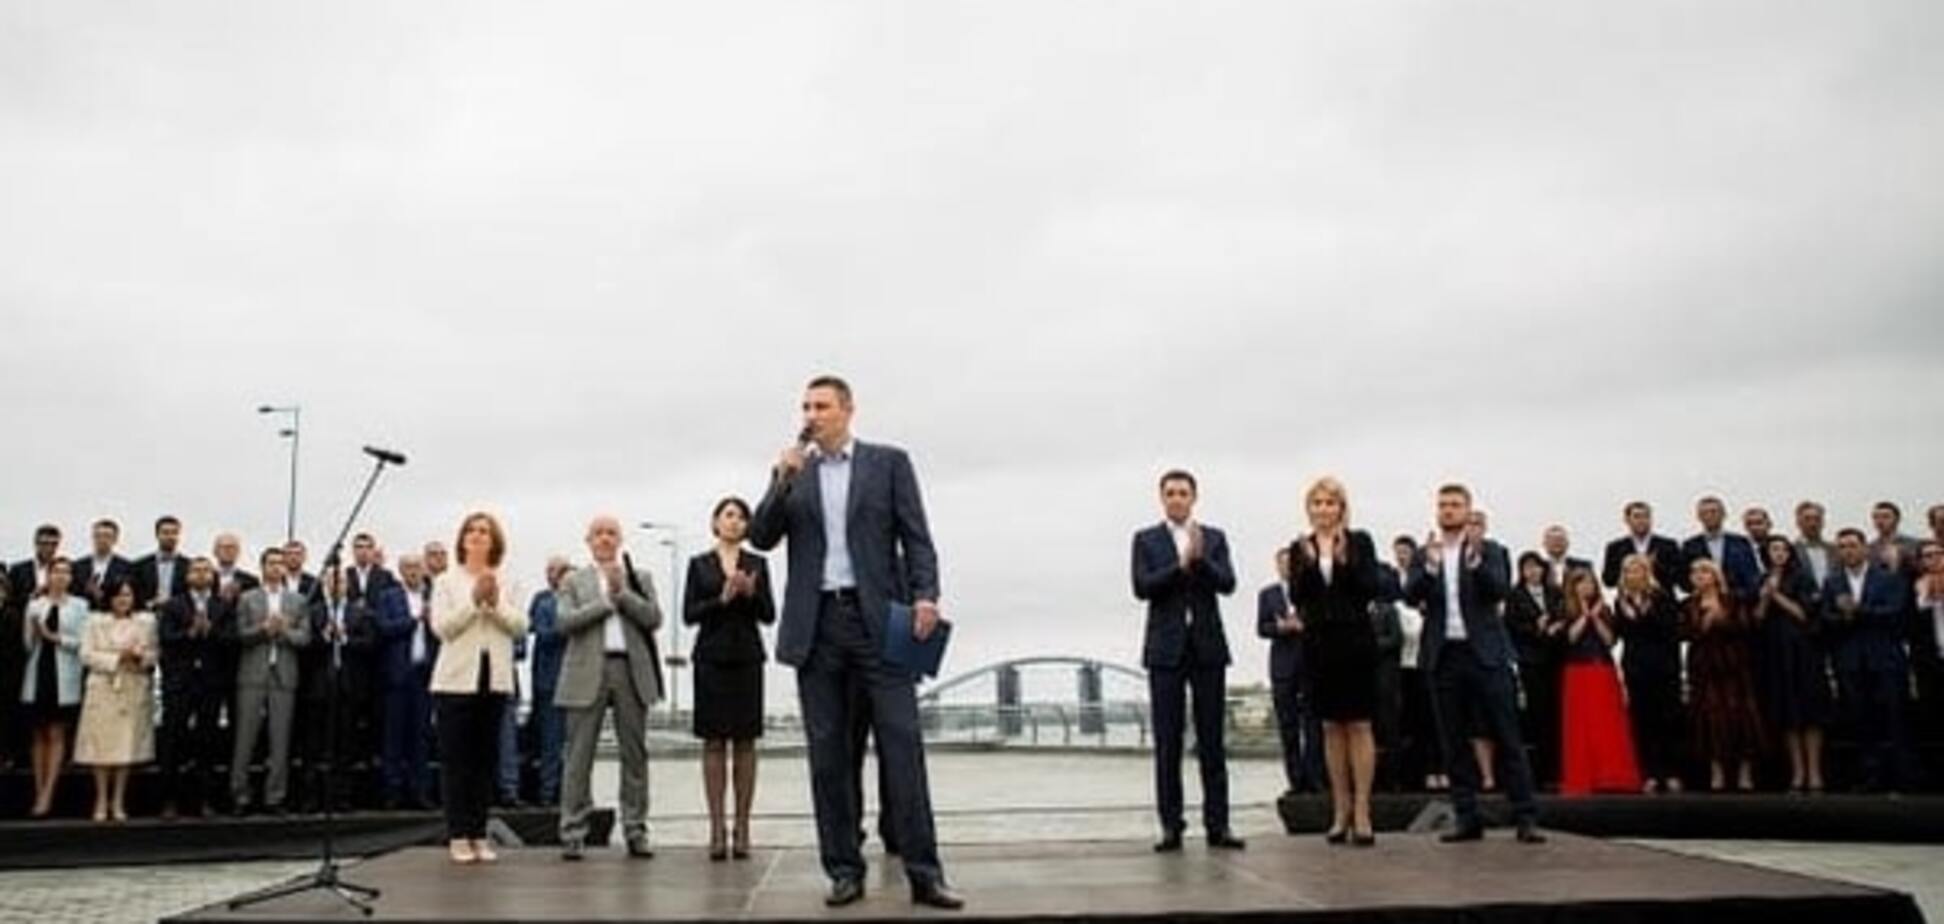 Кличко задает европейский тон своей предвыборной кампанией - эксперт